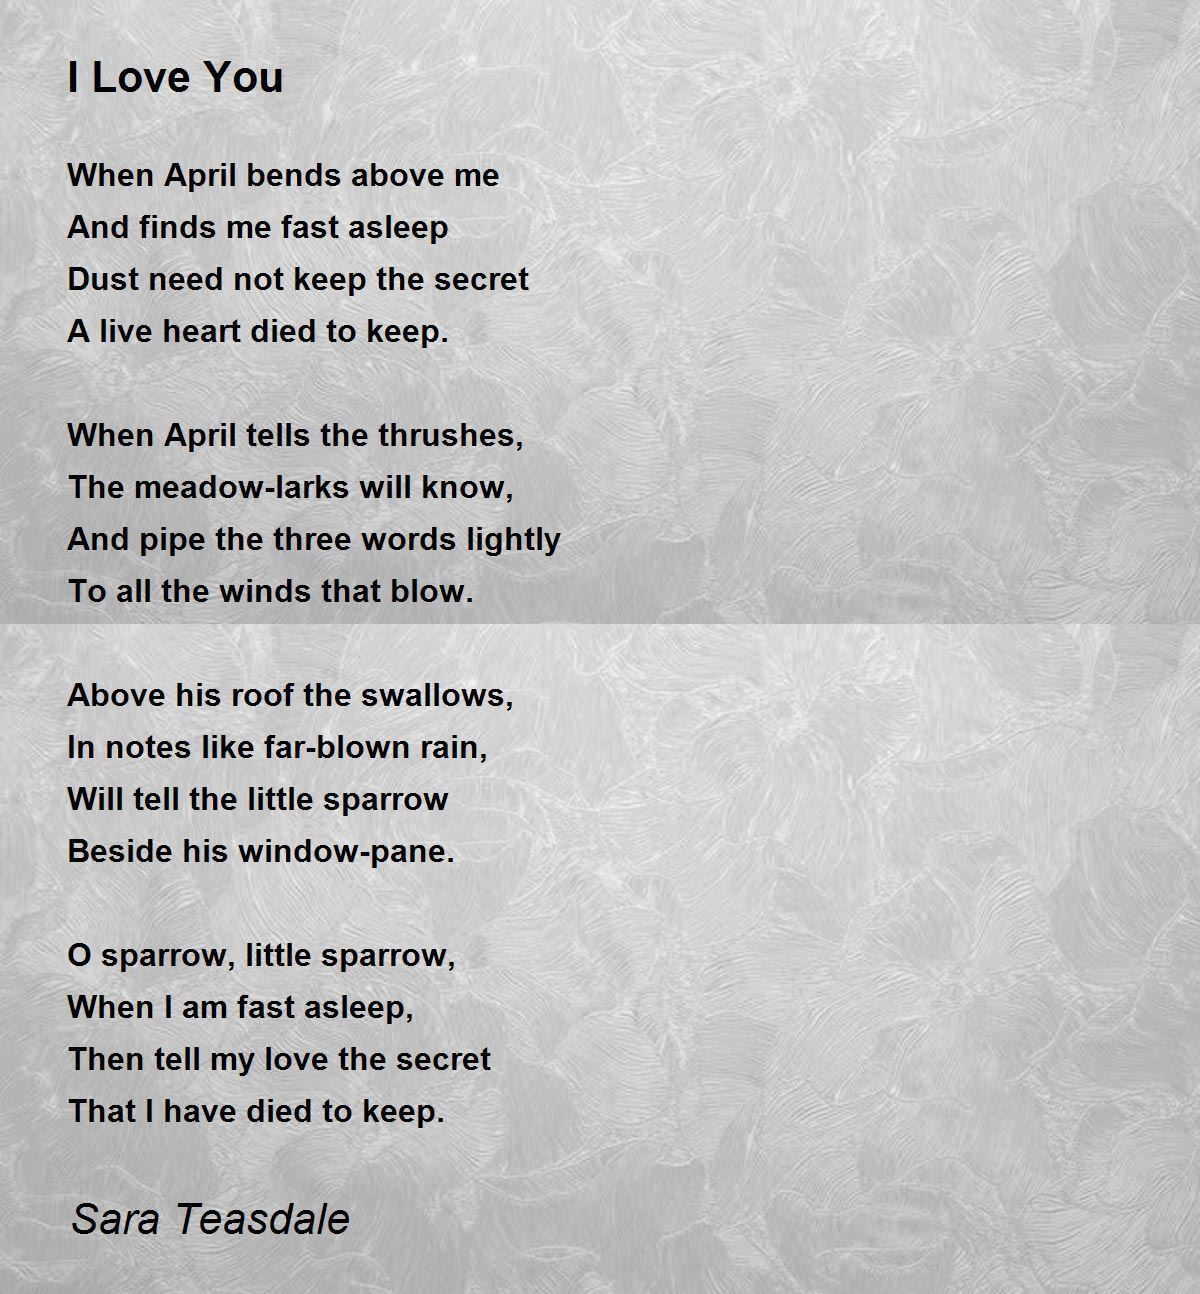 I Love You Poem by Sara Teasdale - Poem Hunter